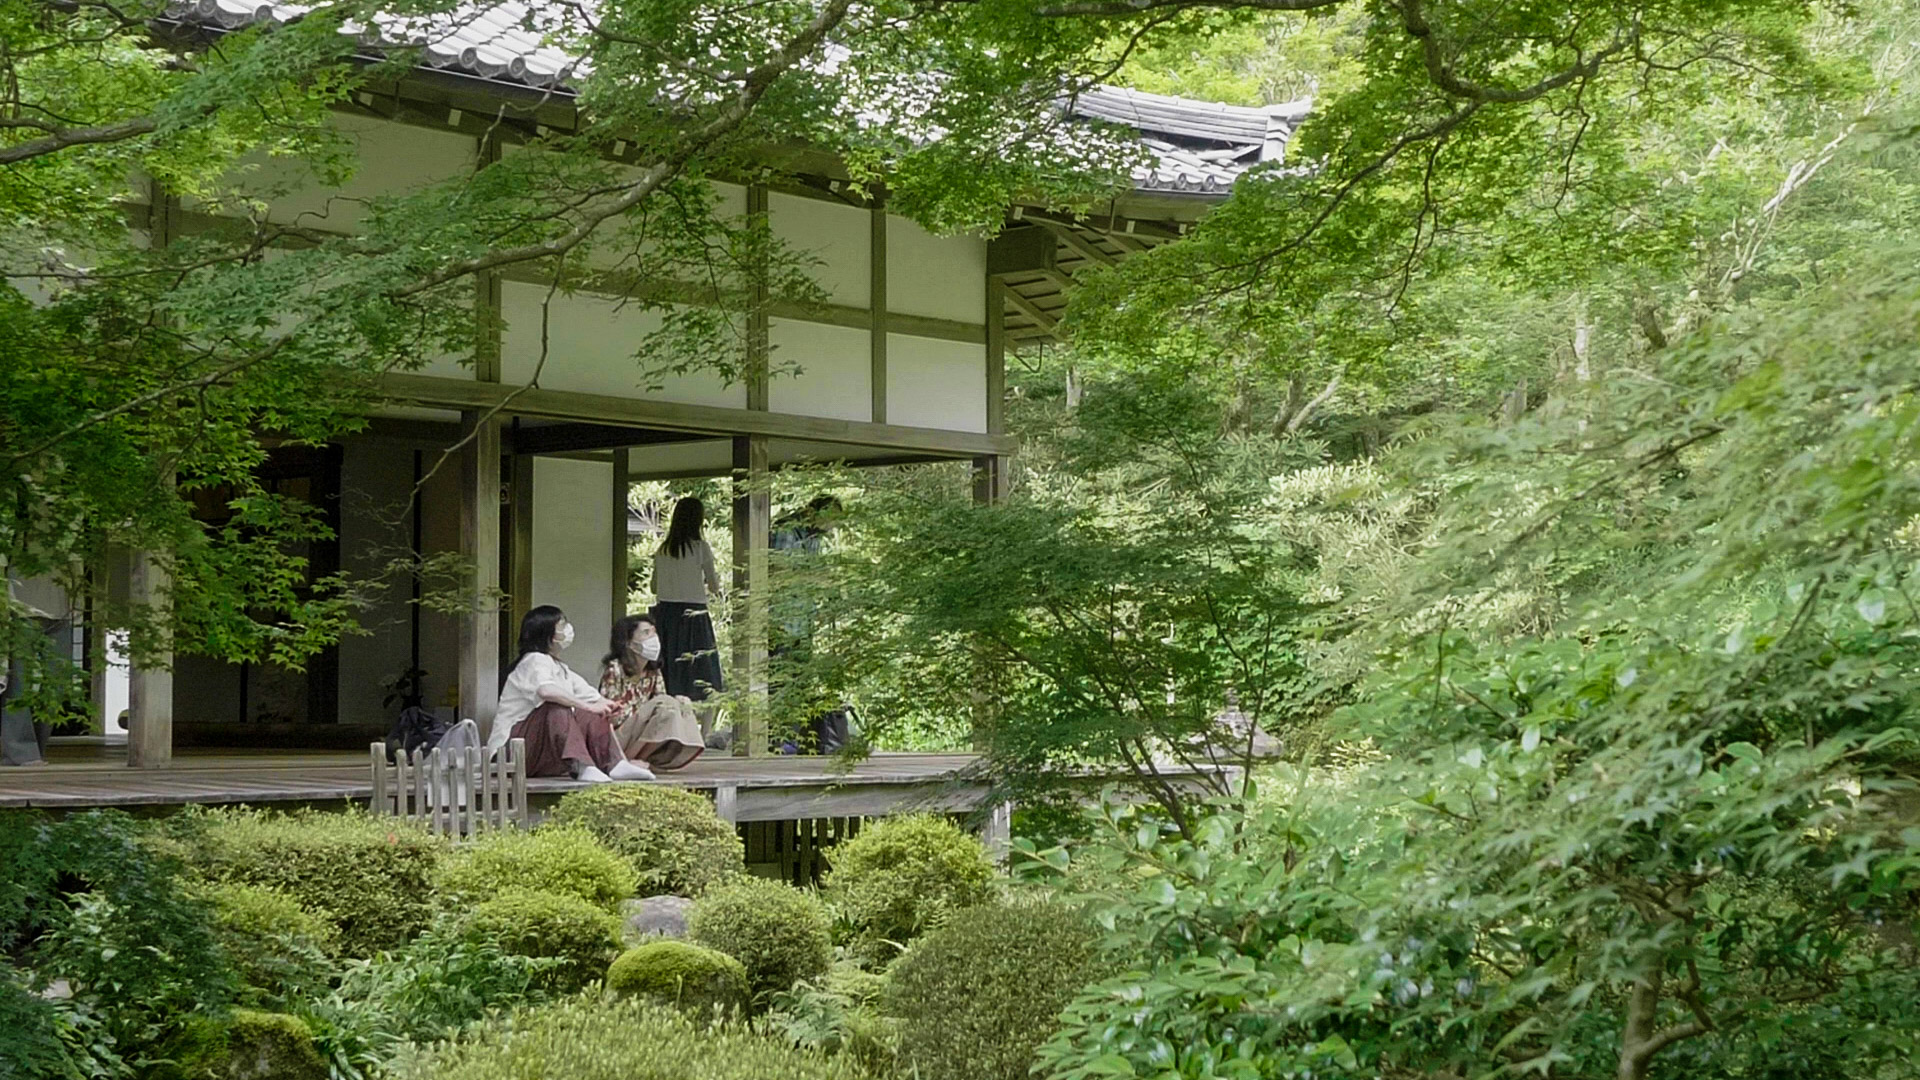 京都・大原 三千院 / 青もみじや苔の絨毯など緑あふれる寺院 | 京都は 